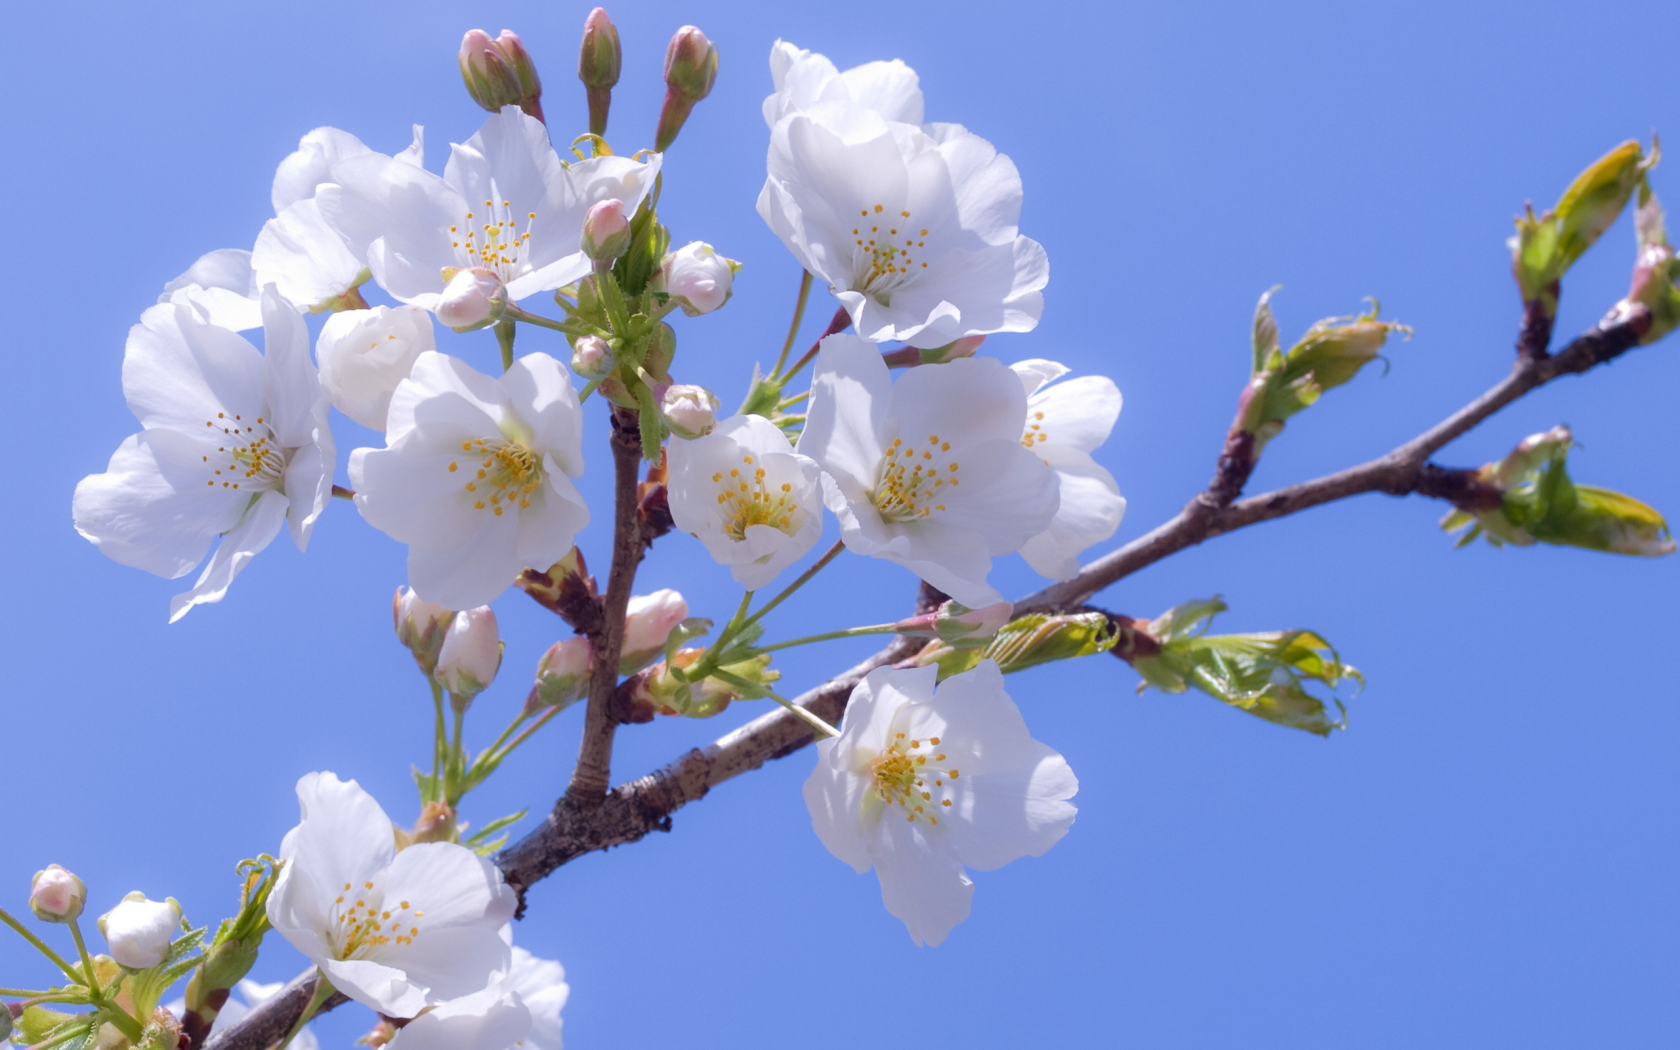 вишня, цветение, цветы, белые, сакура, голубое, лепестки, ветка, белоснежные, небо, нежность, легкость, весна